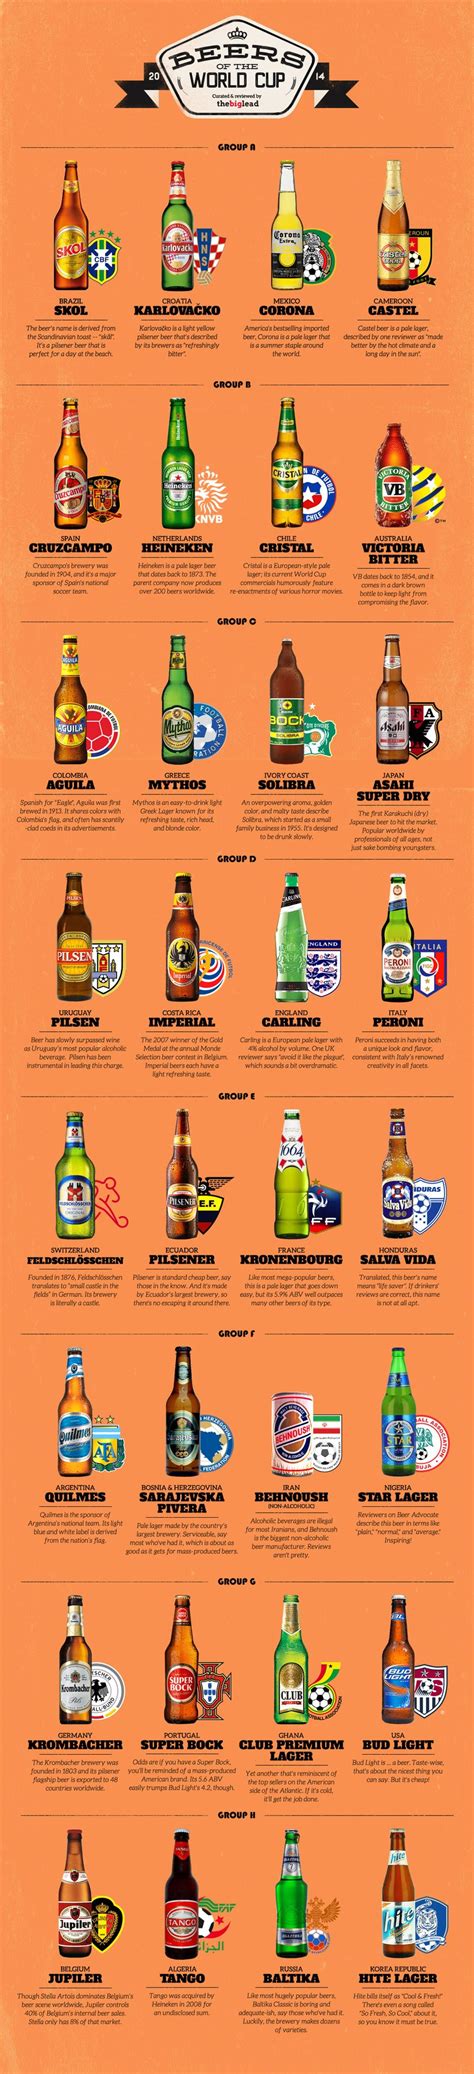 Beer Infographic Popular Beers Beers Of The World Most Popular Beers